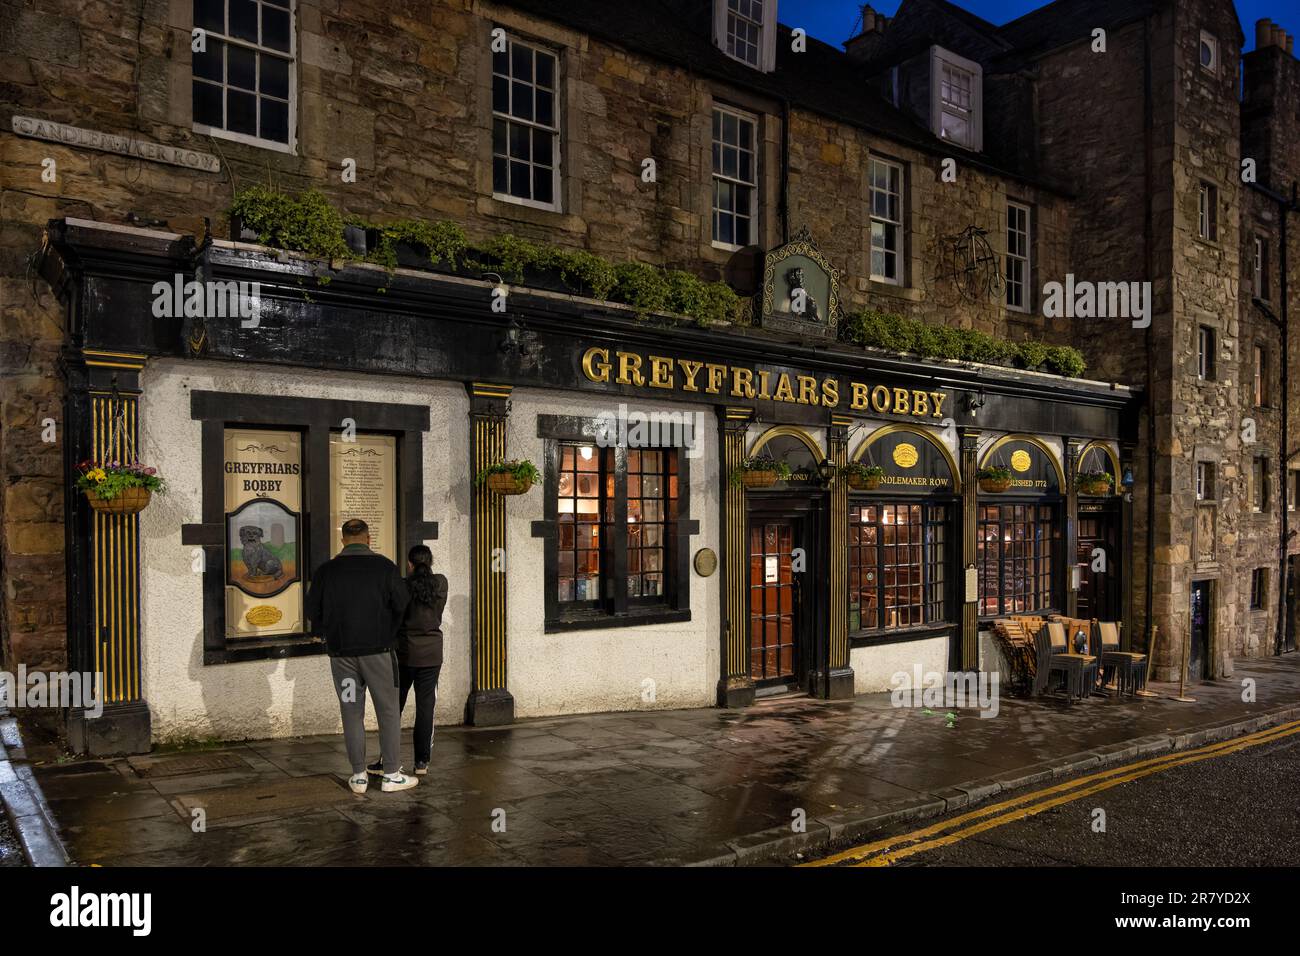 Die Greyfriars Bobby Bar bei Nacht in Edinburgh, Schottland, Großbritannien. Historischer Pub in der 34 Candlemaker Row, berühmt für die Legende eines Hundes namens Bobby. Stockfoto